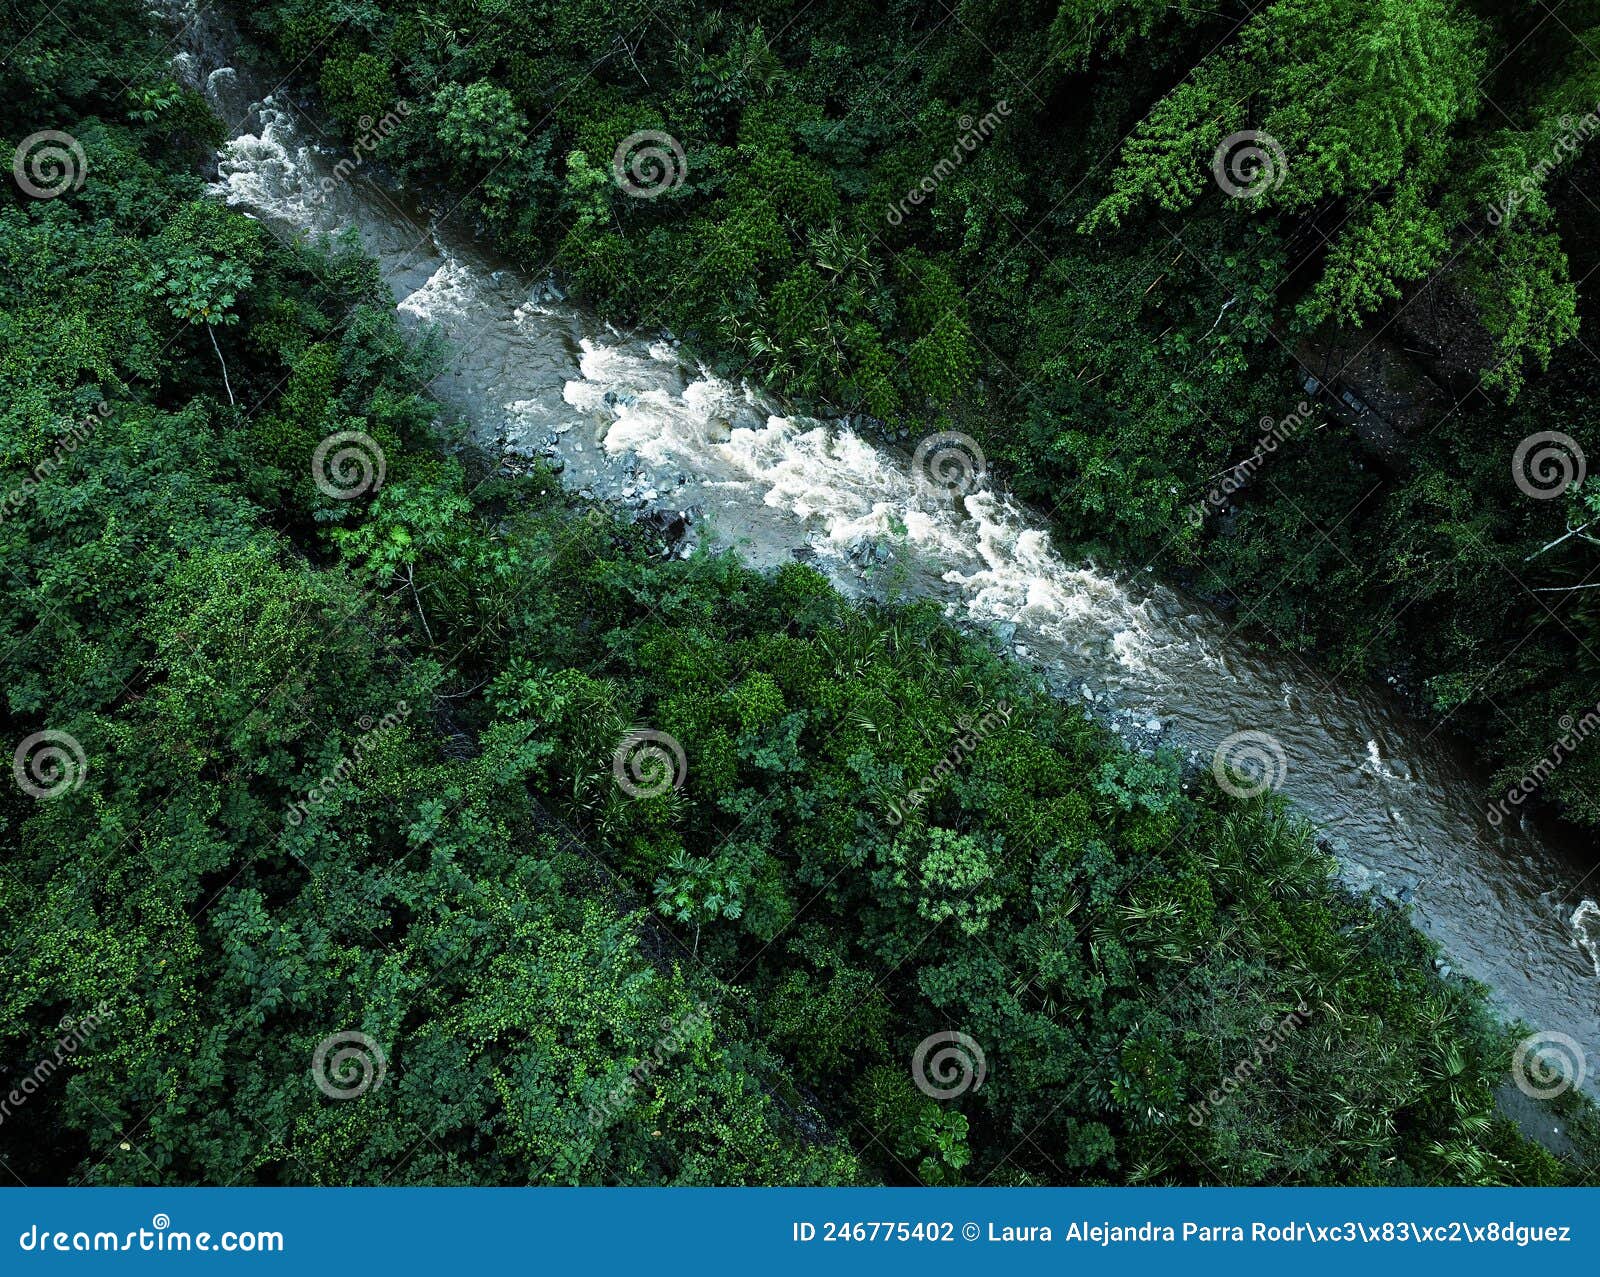 a natural landscape of a river among intense foliage. un paisaje natural de un rÃÂ­o entre un intenso follaje